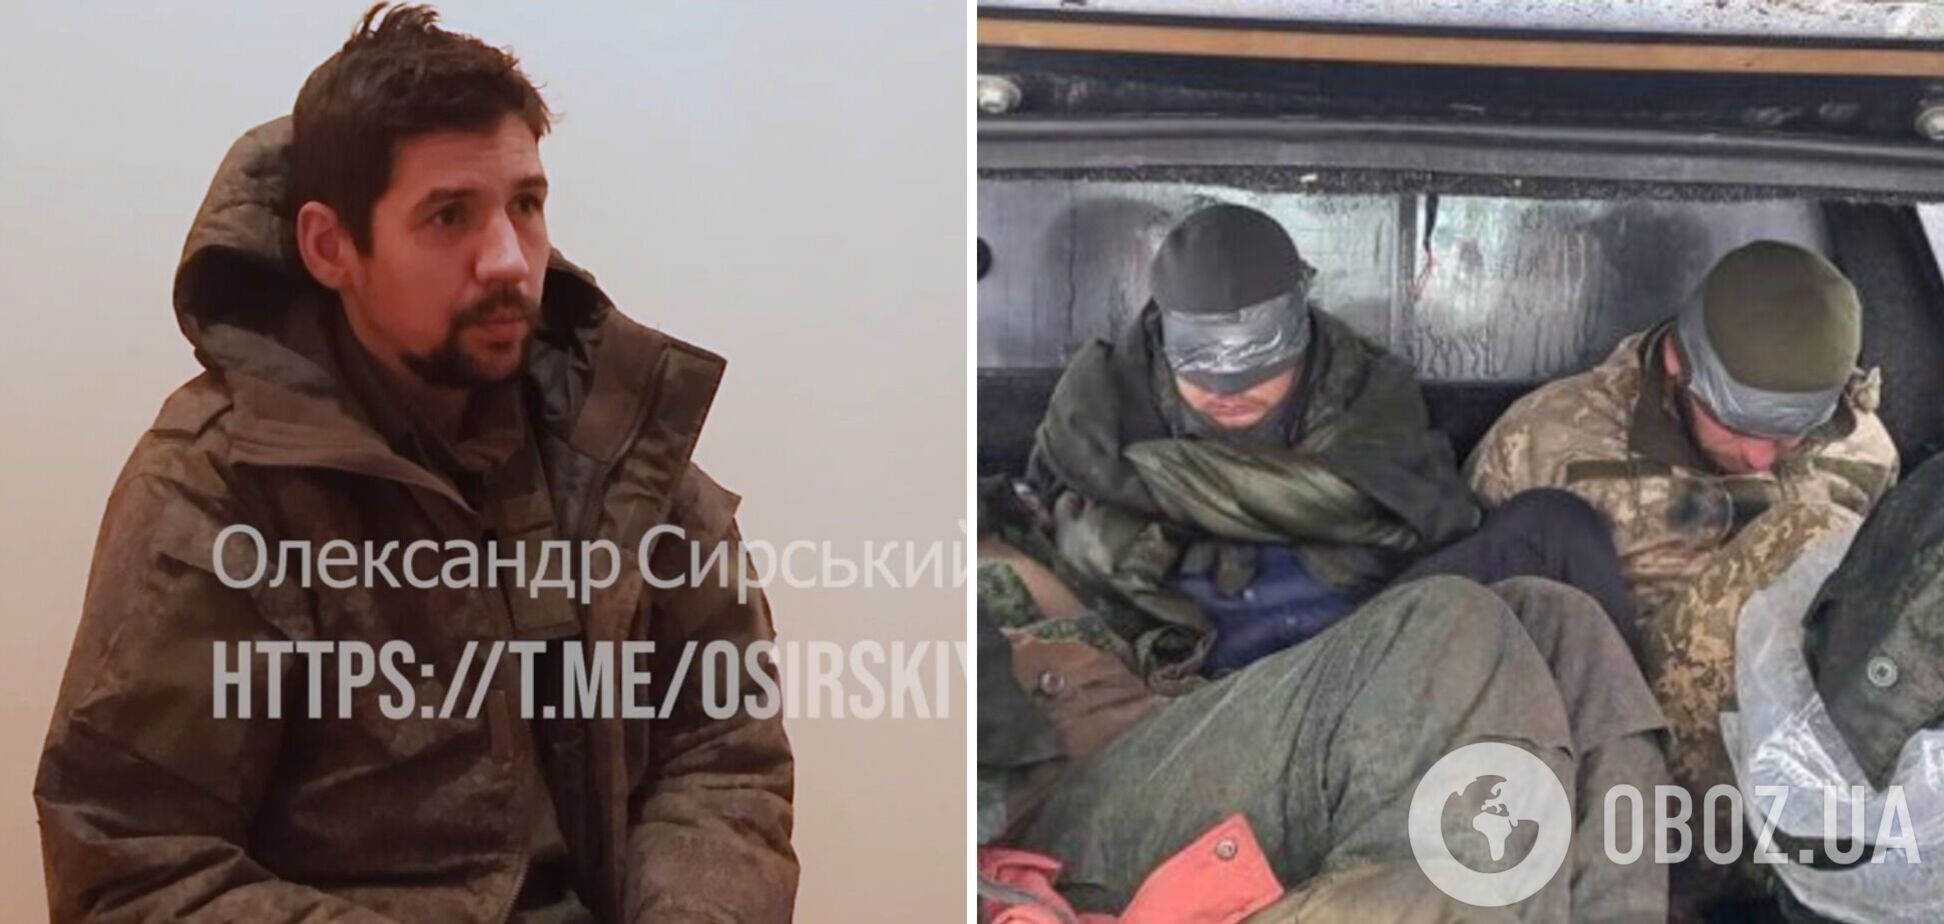 'Сказали, что погрузят в КамАЗ и больше никто нас не увидит': пленный из ЧВК 'Ветеран' пожаловался, что россиян гонят на войну угрозами. Видео